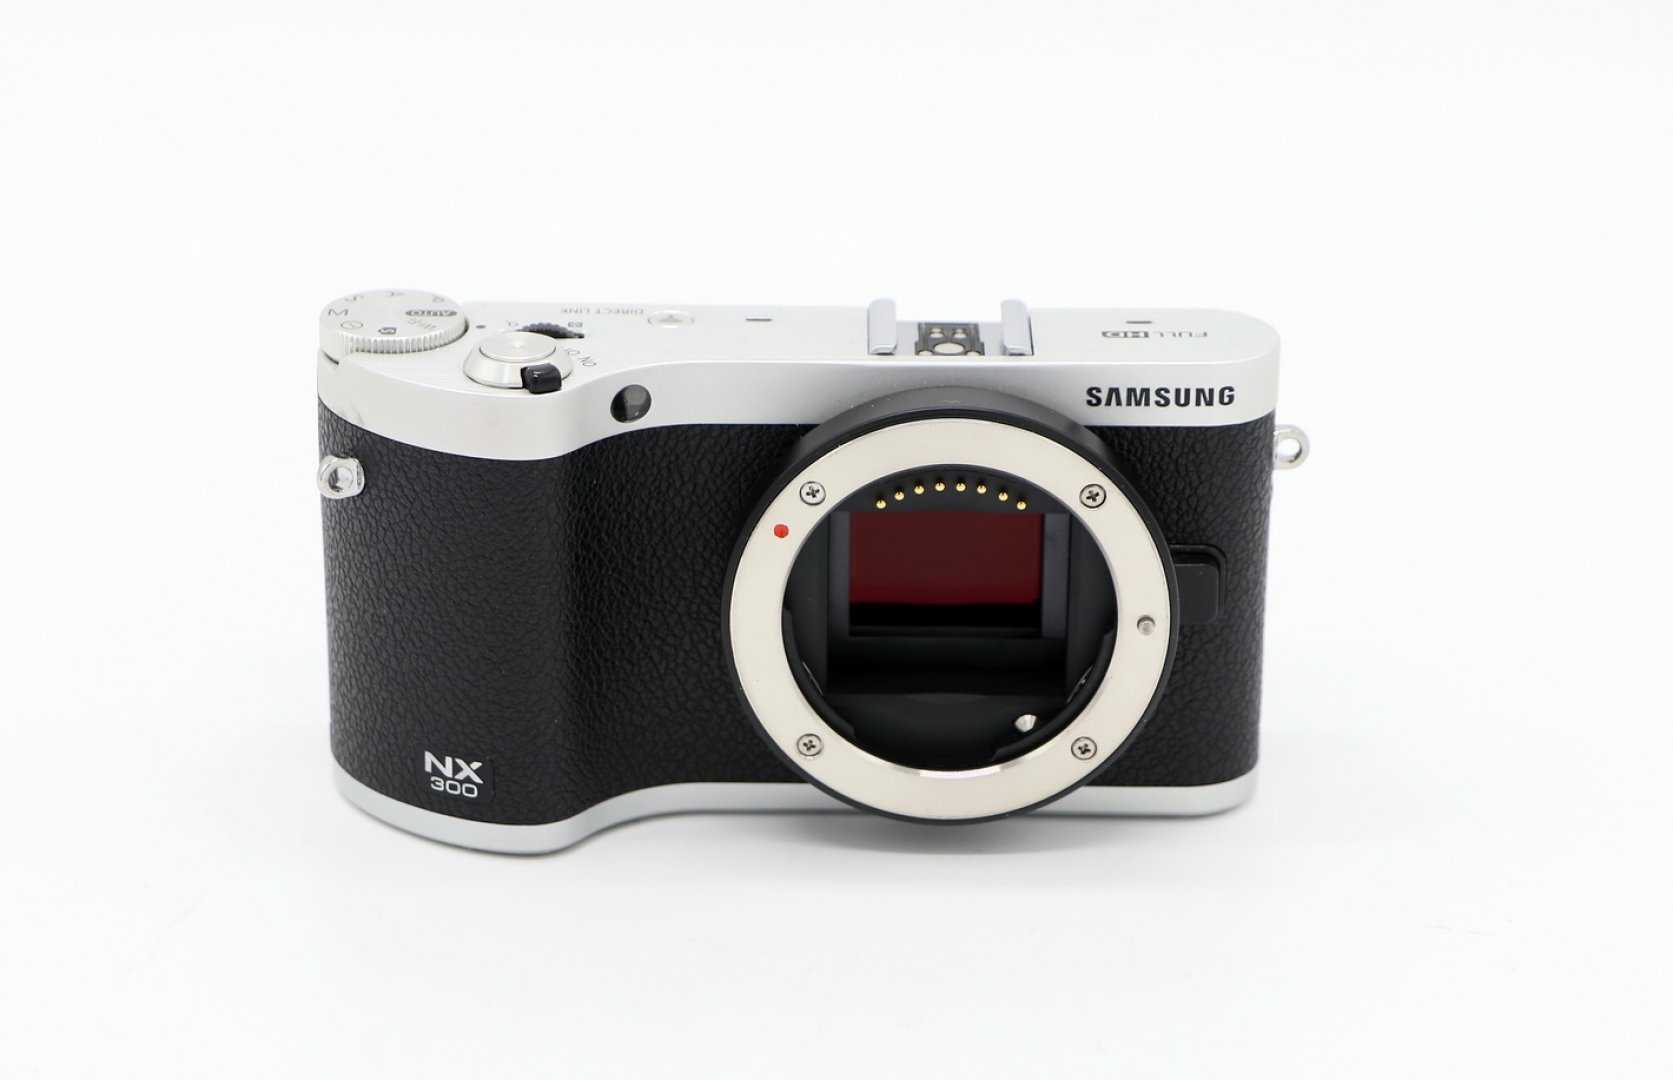 Фотоаппарат самсунг nx3300 kit купить недорого в москве, цена 2021, отзывы г. москва